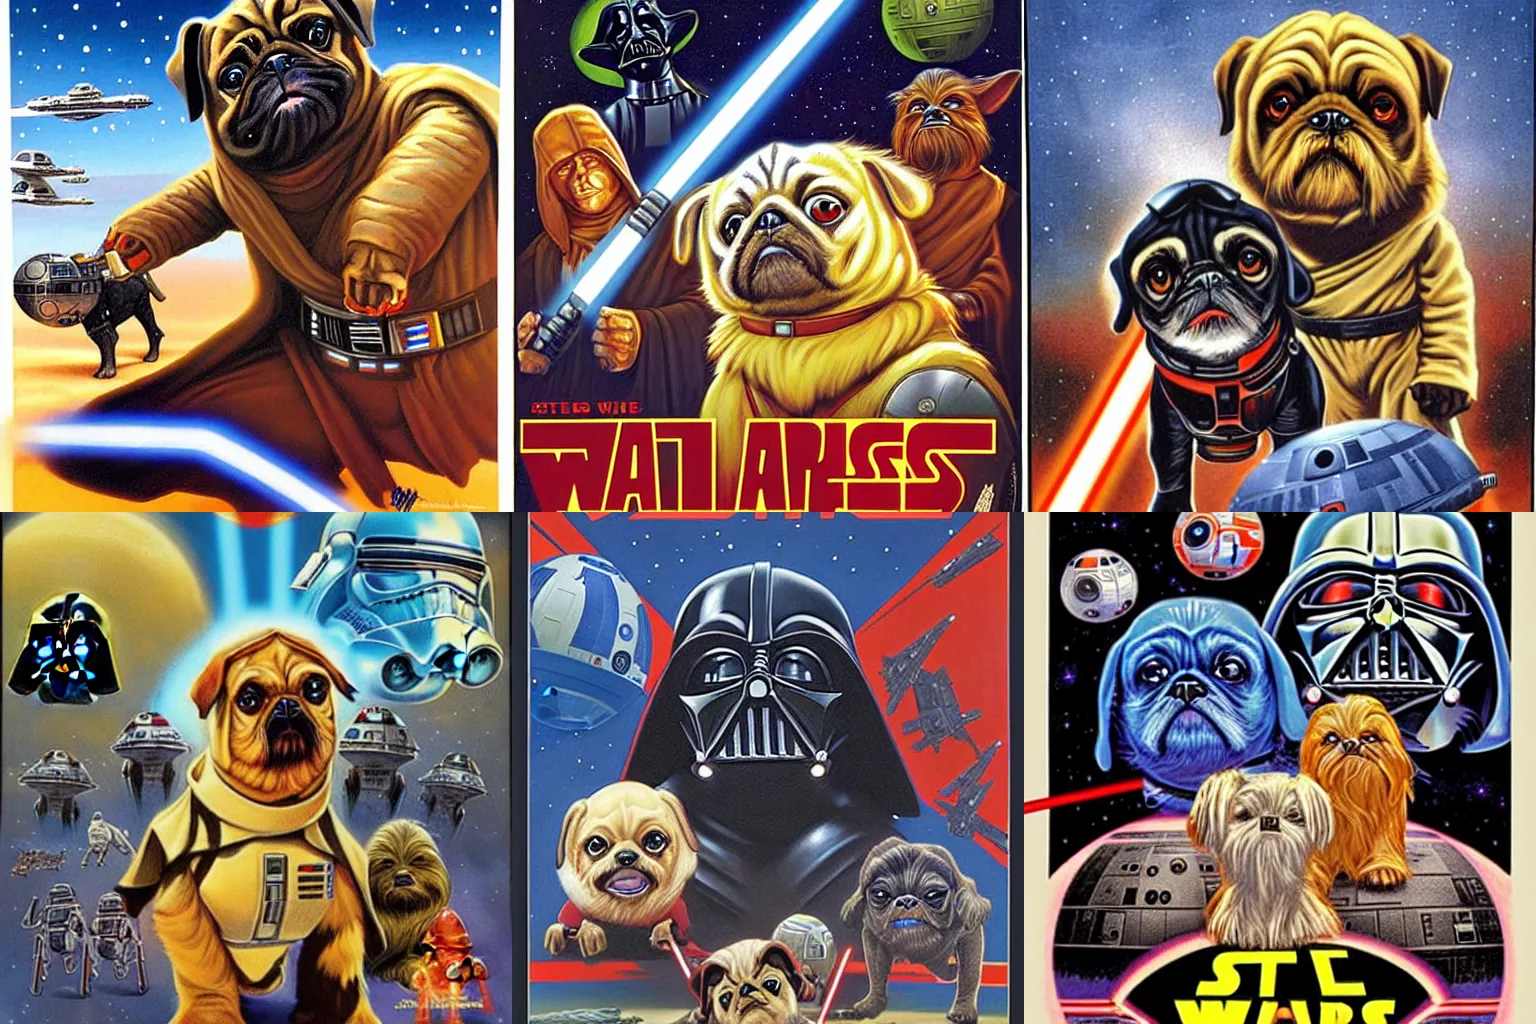 Prompt: Star Wars pugs poster by Greg Hildebrandt